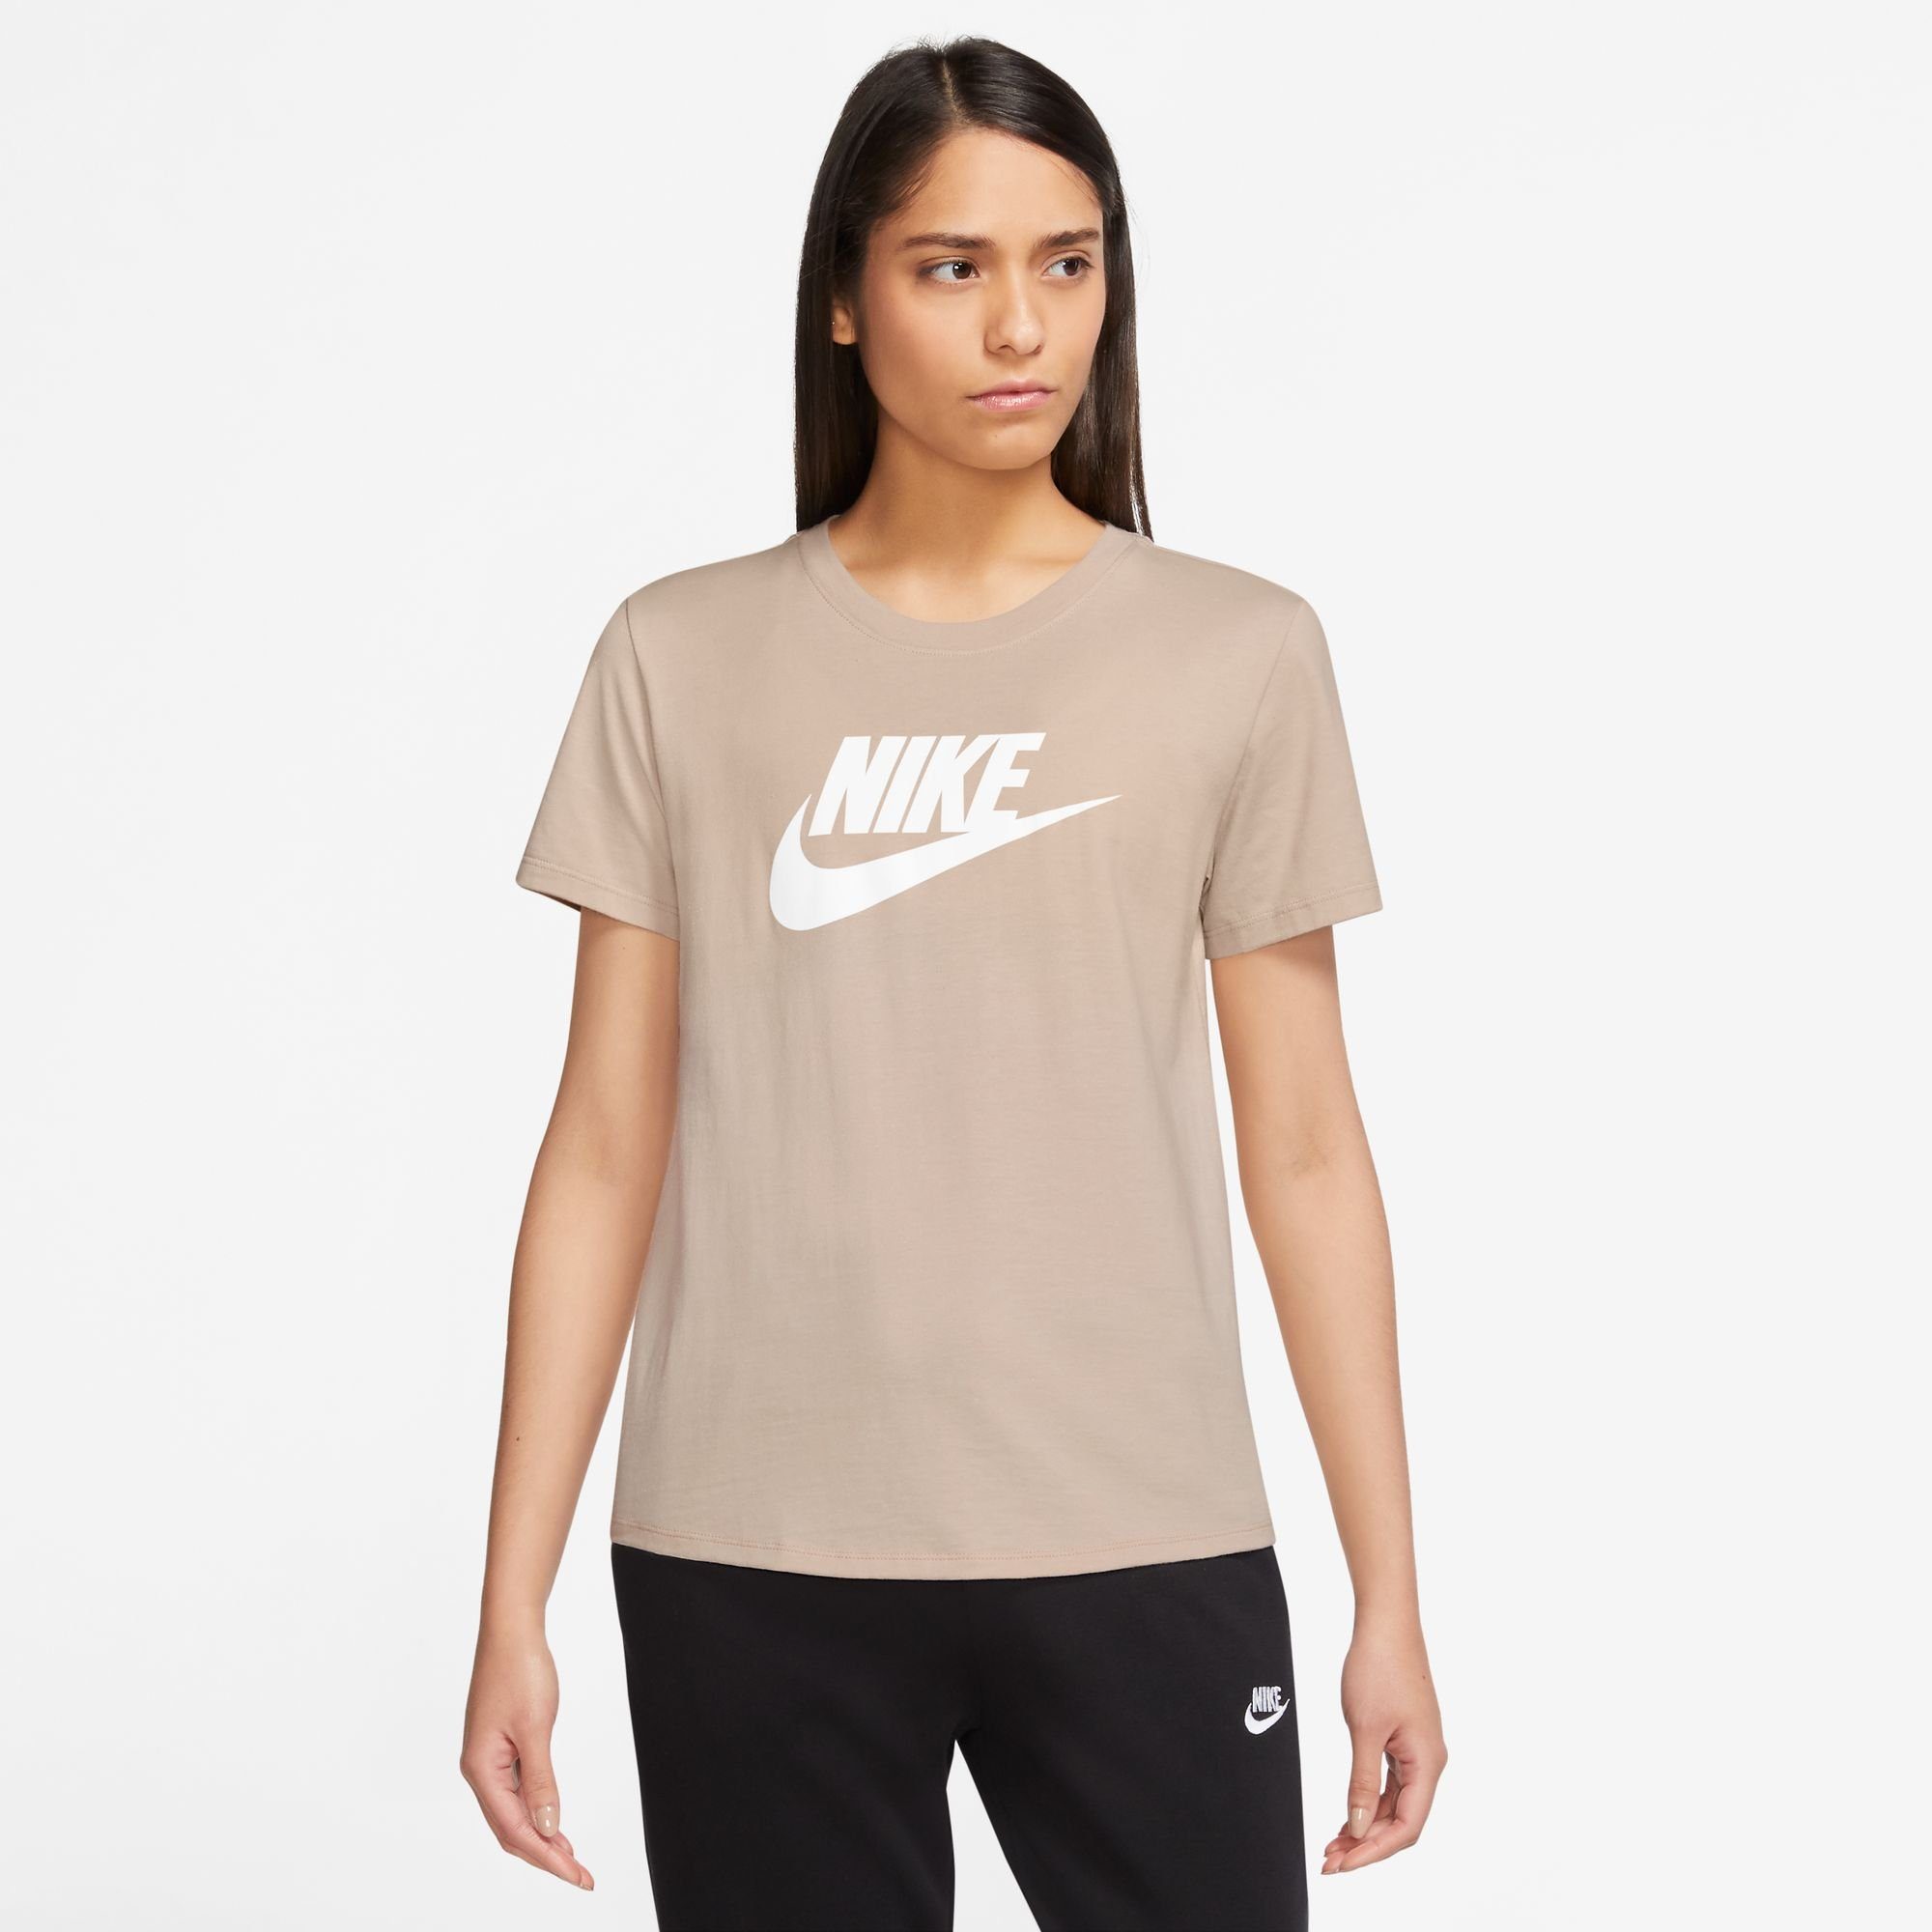 kaufen | Shirts Braune online Damen für Nike OTTO